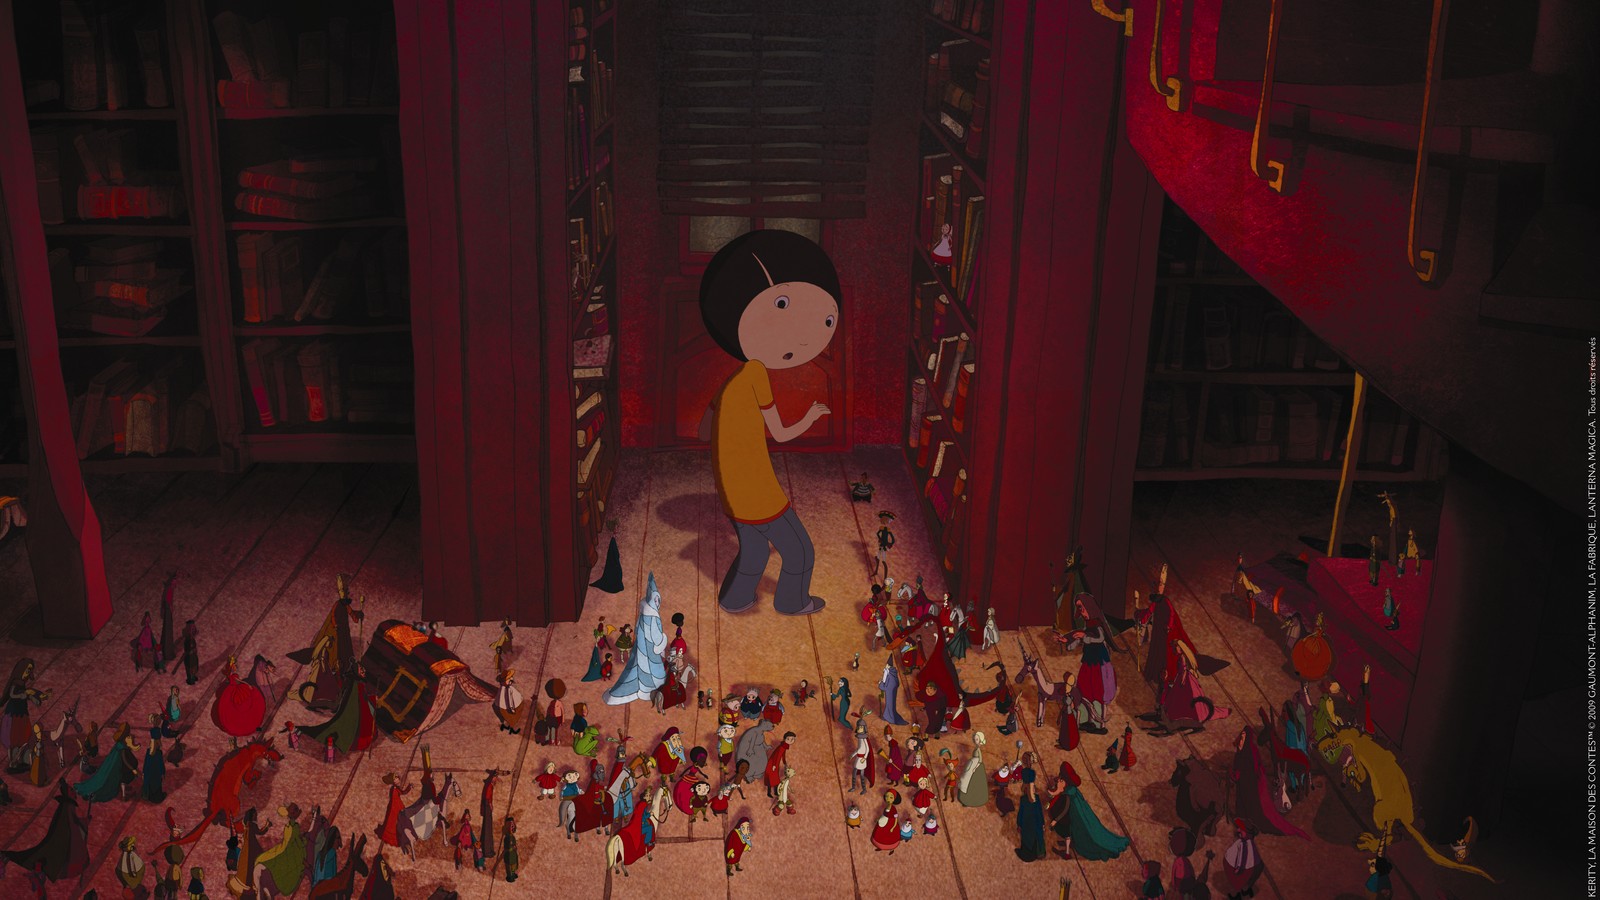 Personnage principal du film dans une bibliothèque, entouré de petits personnages s'échappant des livres